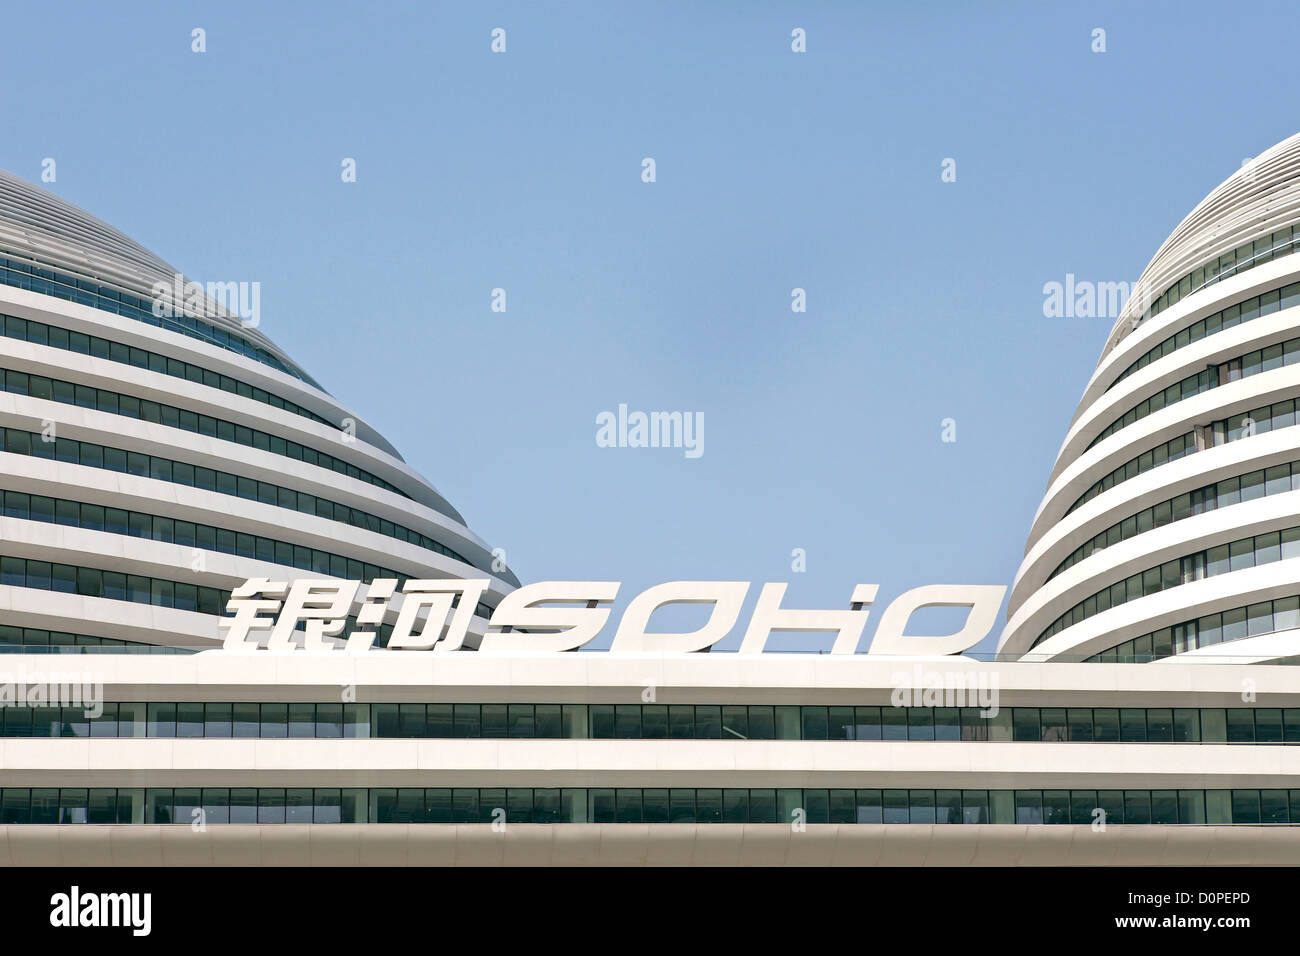 Galaxy Soho, Beijing, Chine. Architecte : Zaha Hadid Architects, 2012. Vue partielle des dômes avec logo. Banque D'Images